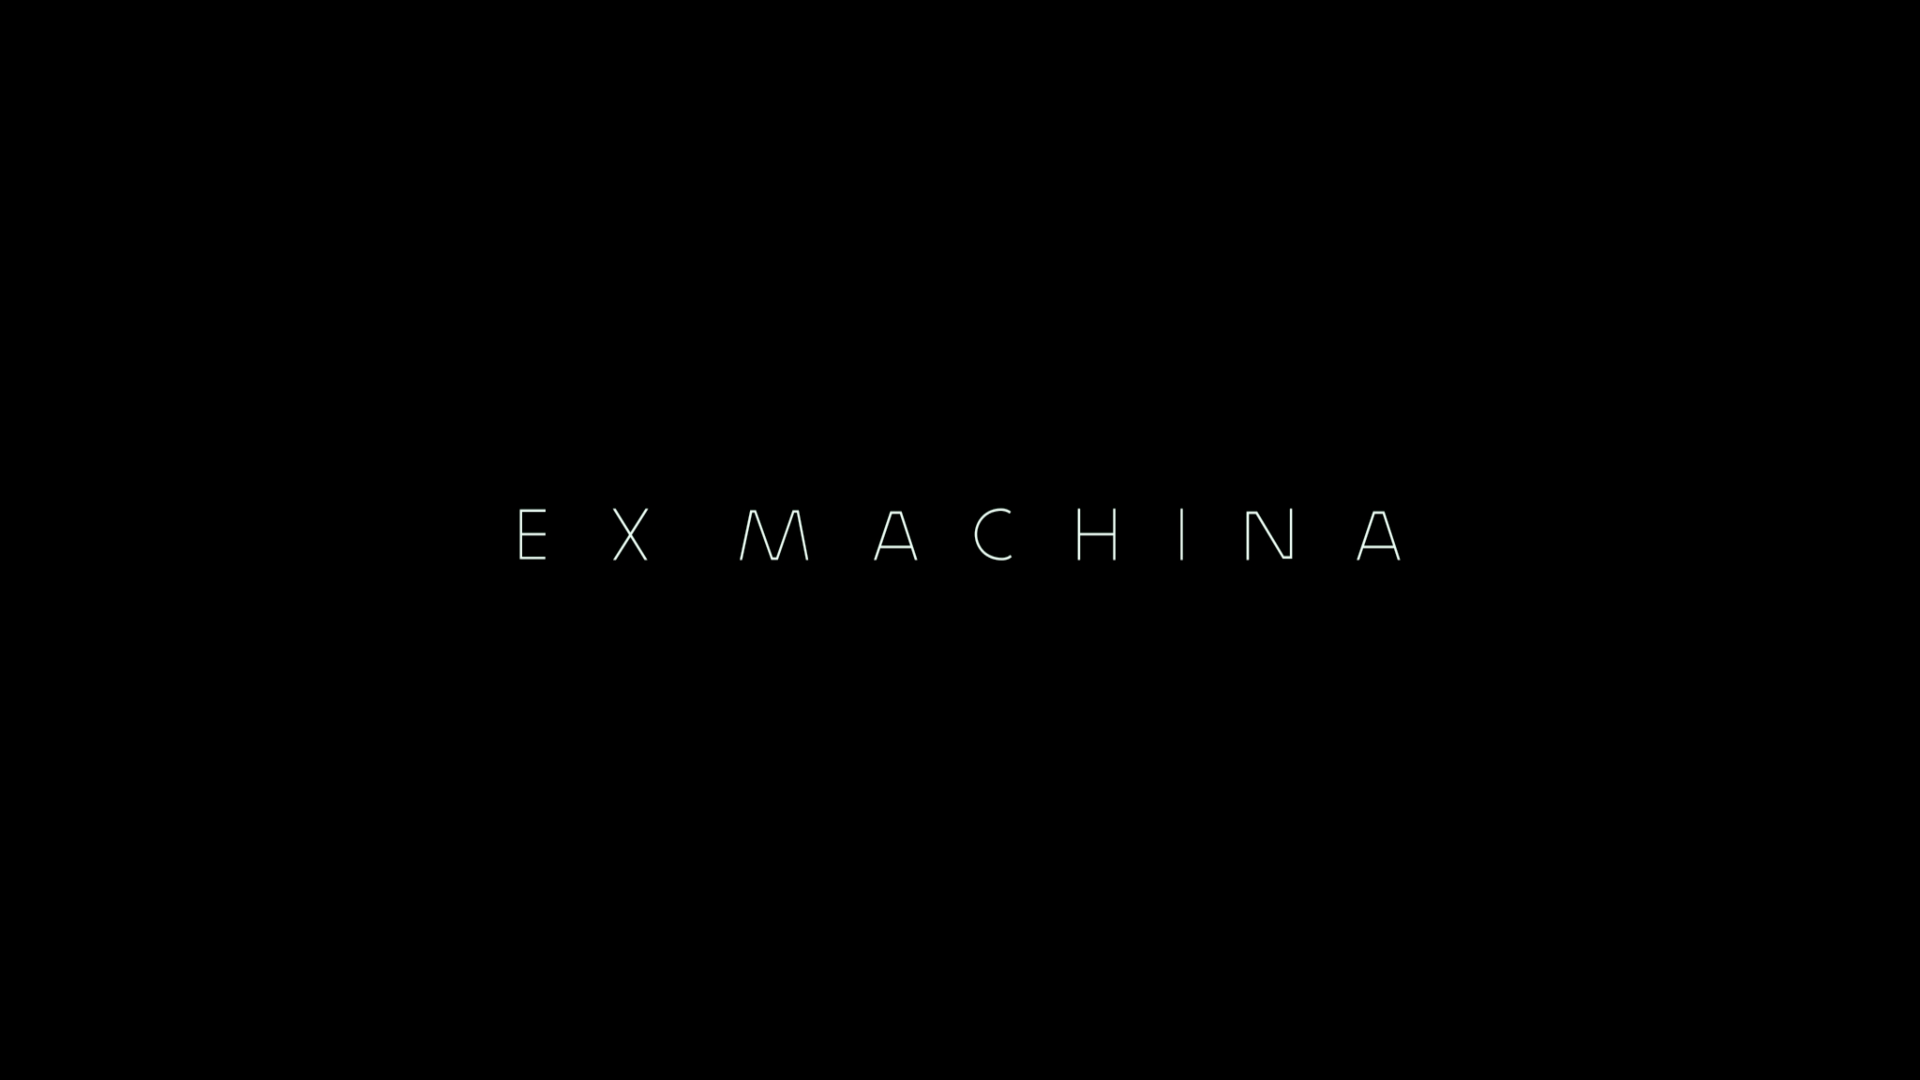 Ex machina Wallpaper ID:1233